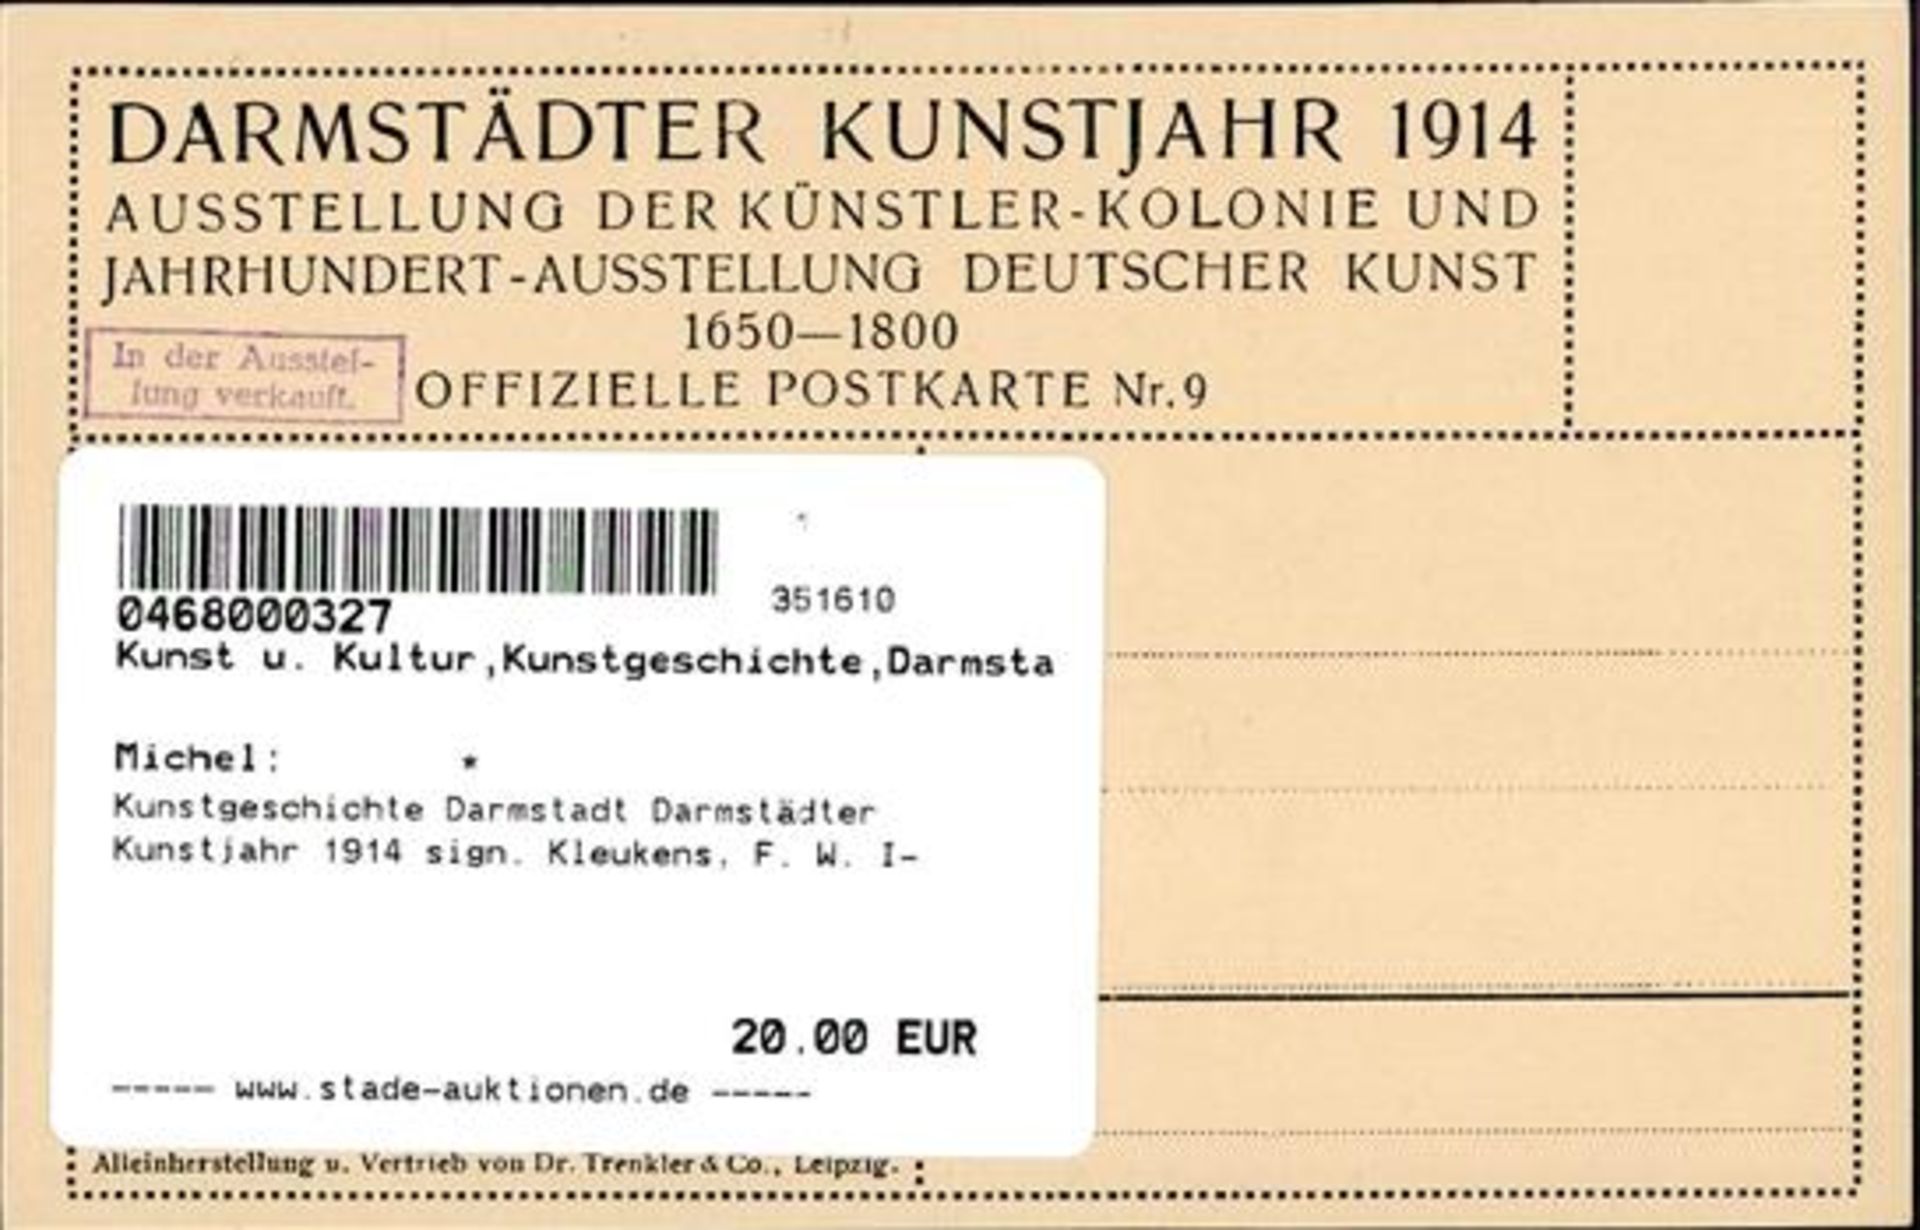 Kunstgeschichte Darmstadt Darmstädter Kunstjahr 1914 sign. Kleukens, F. W. I- - Bild 2 aus 2